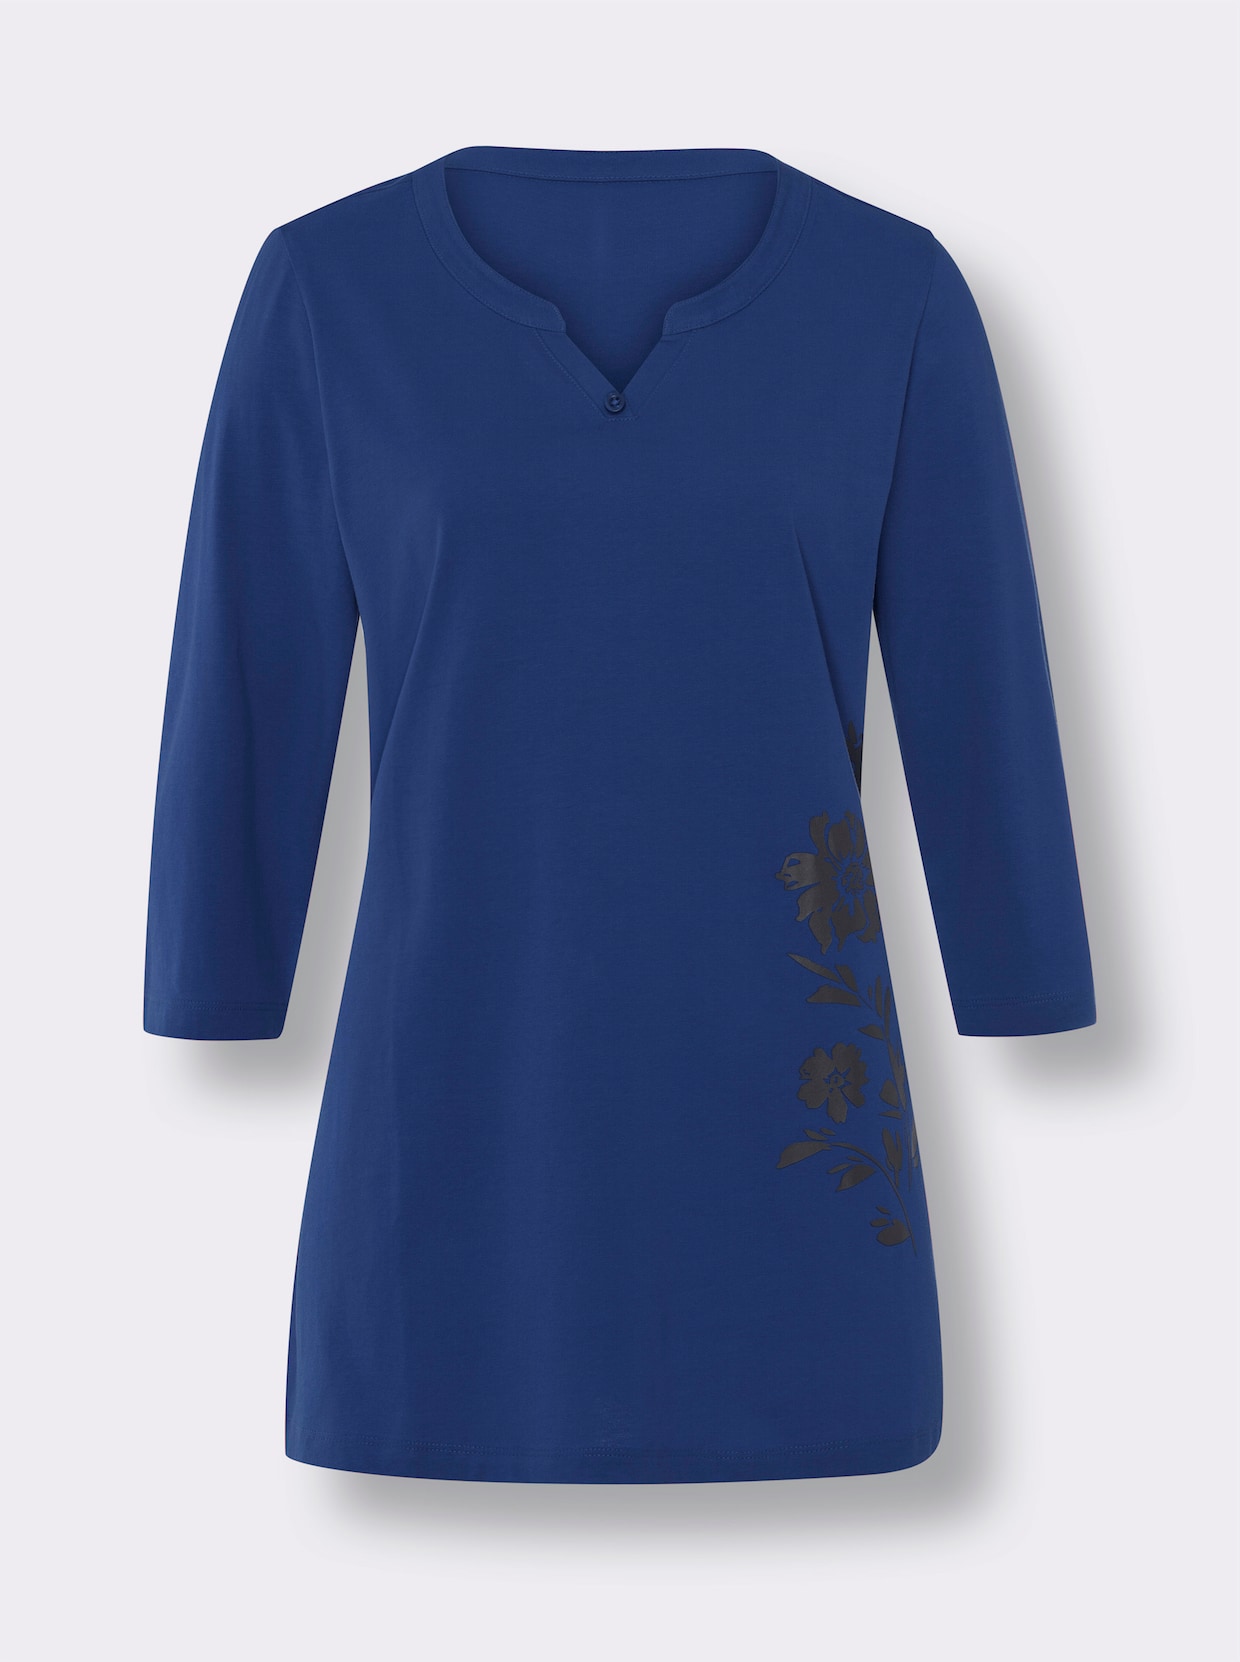 Dlouhé tričko - královská modrá